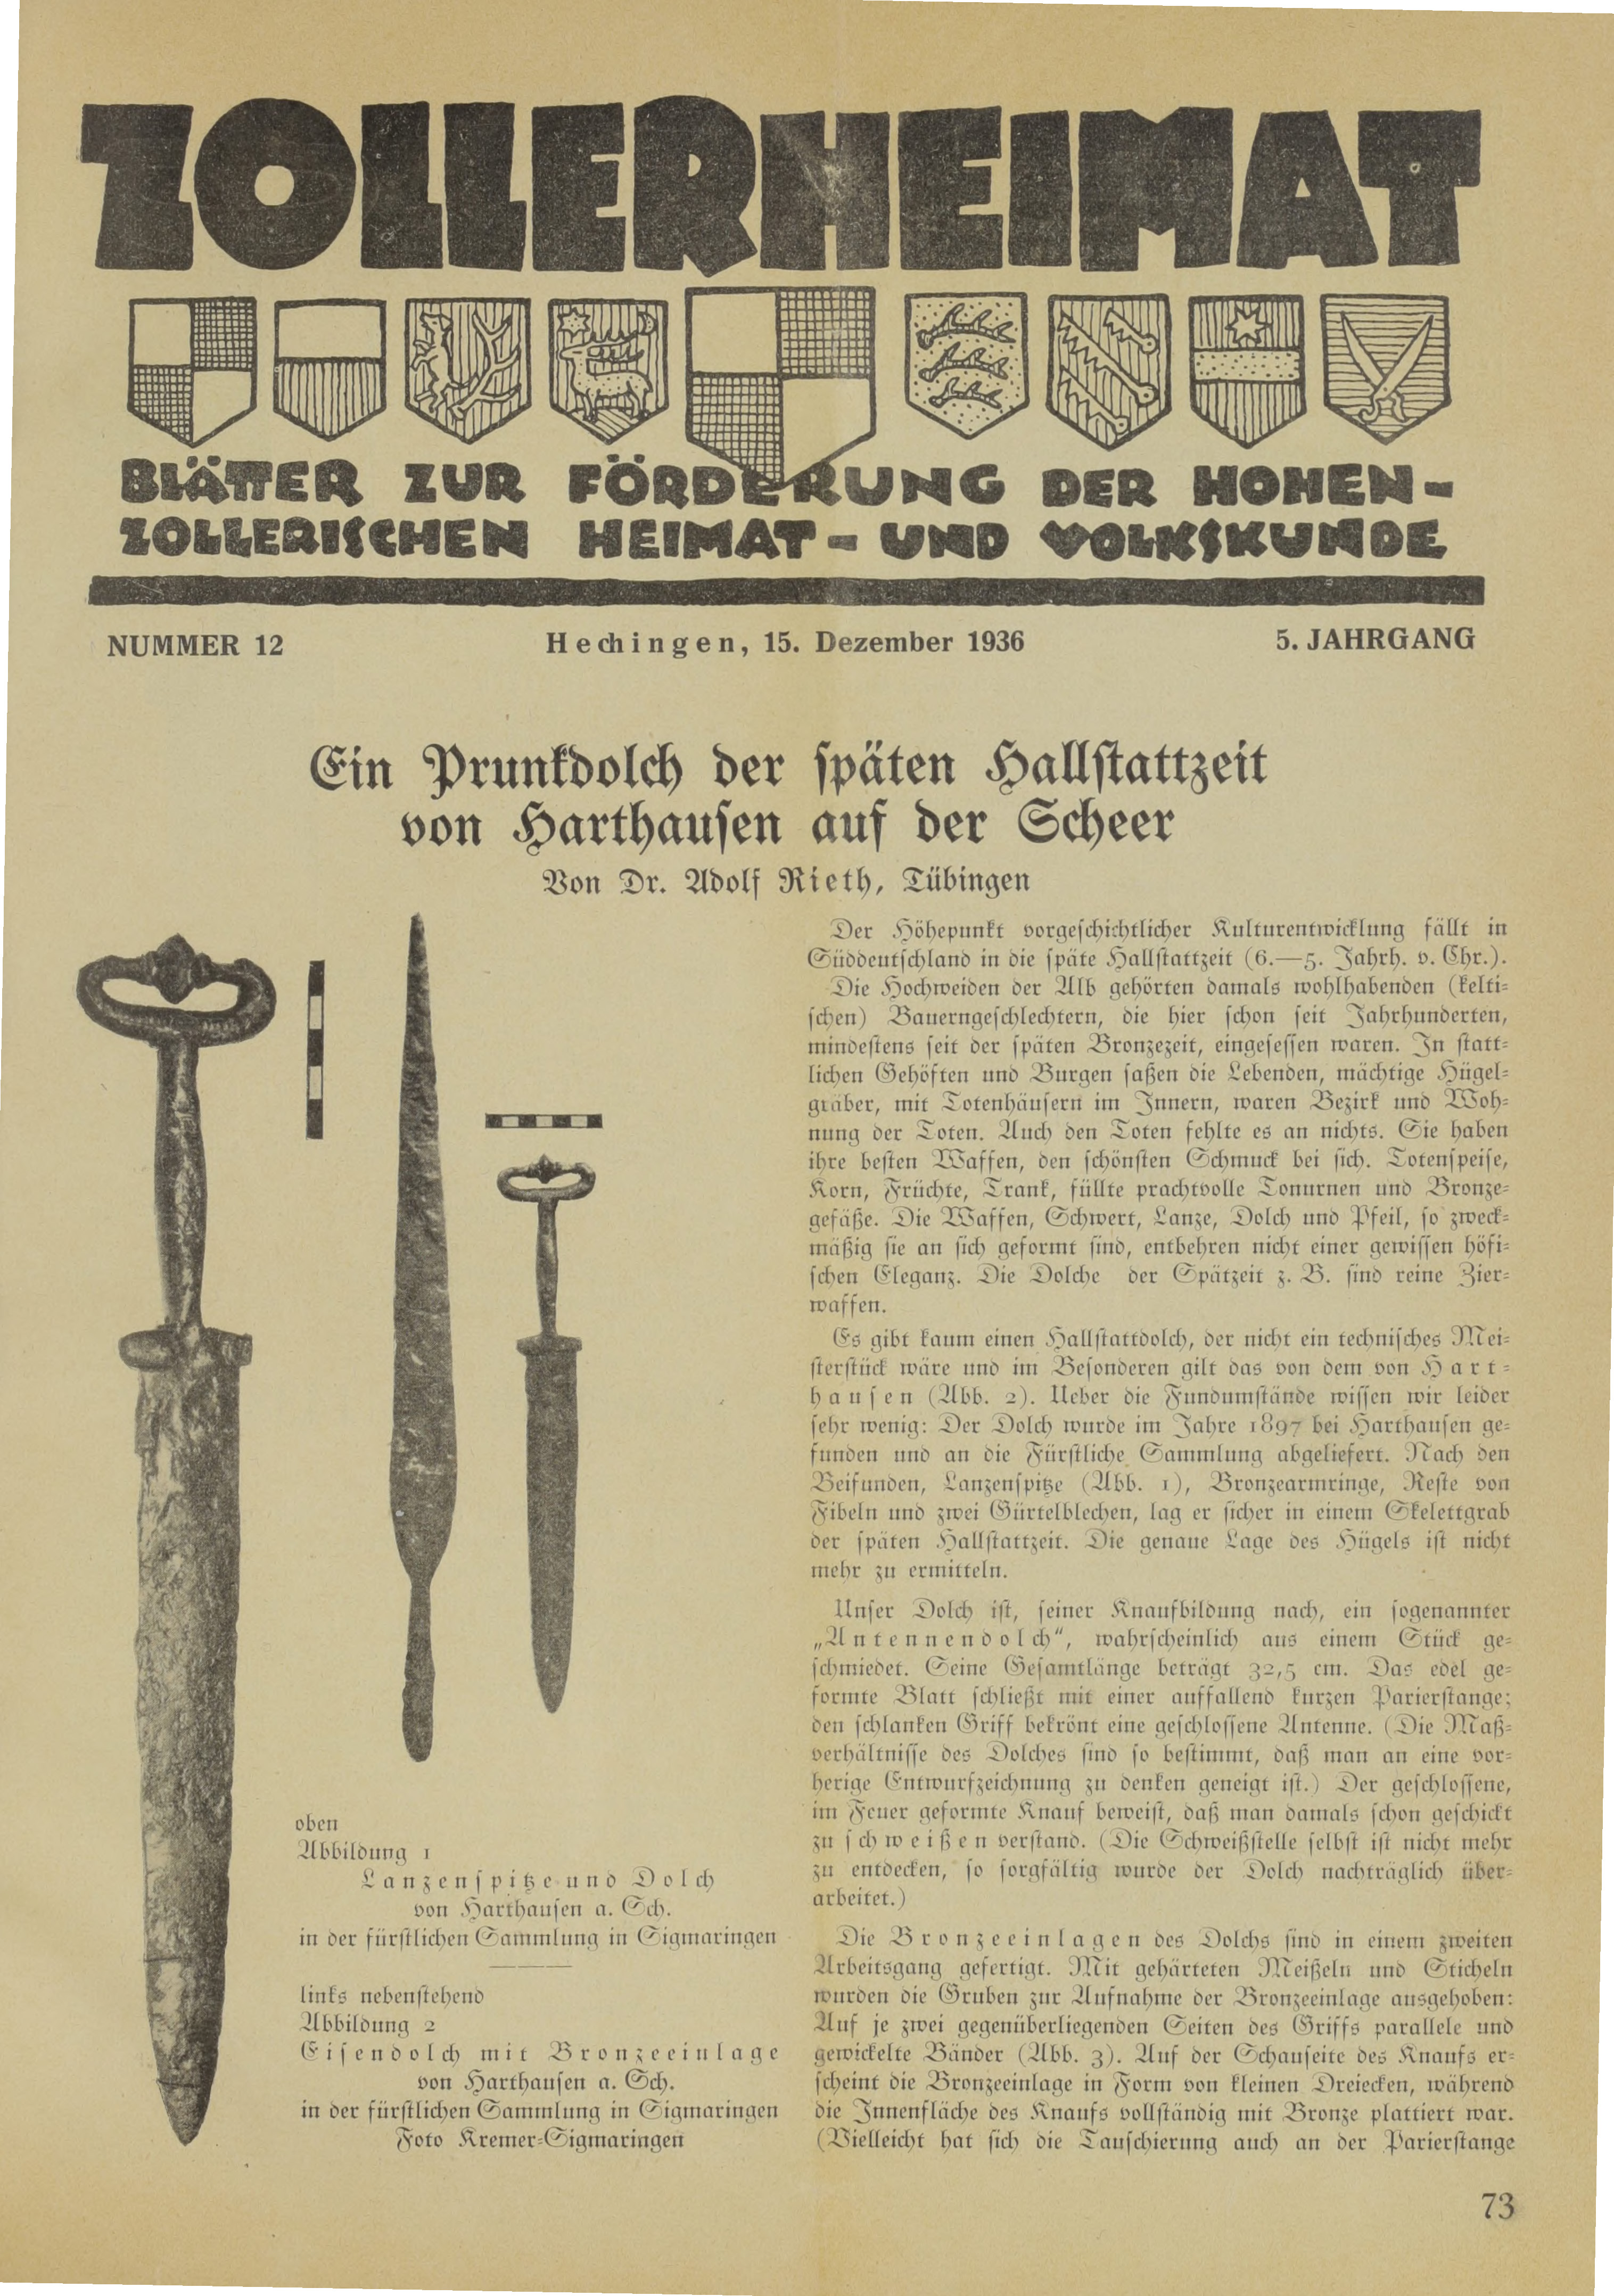                     Ansehen Bd. 5 Nr. 12 (1936): Zollerheimat
                